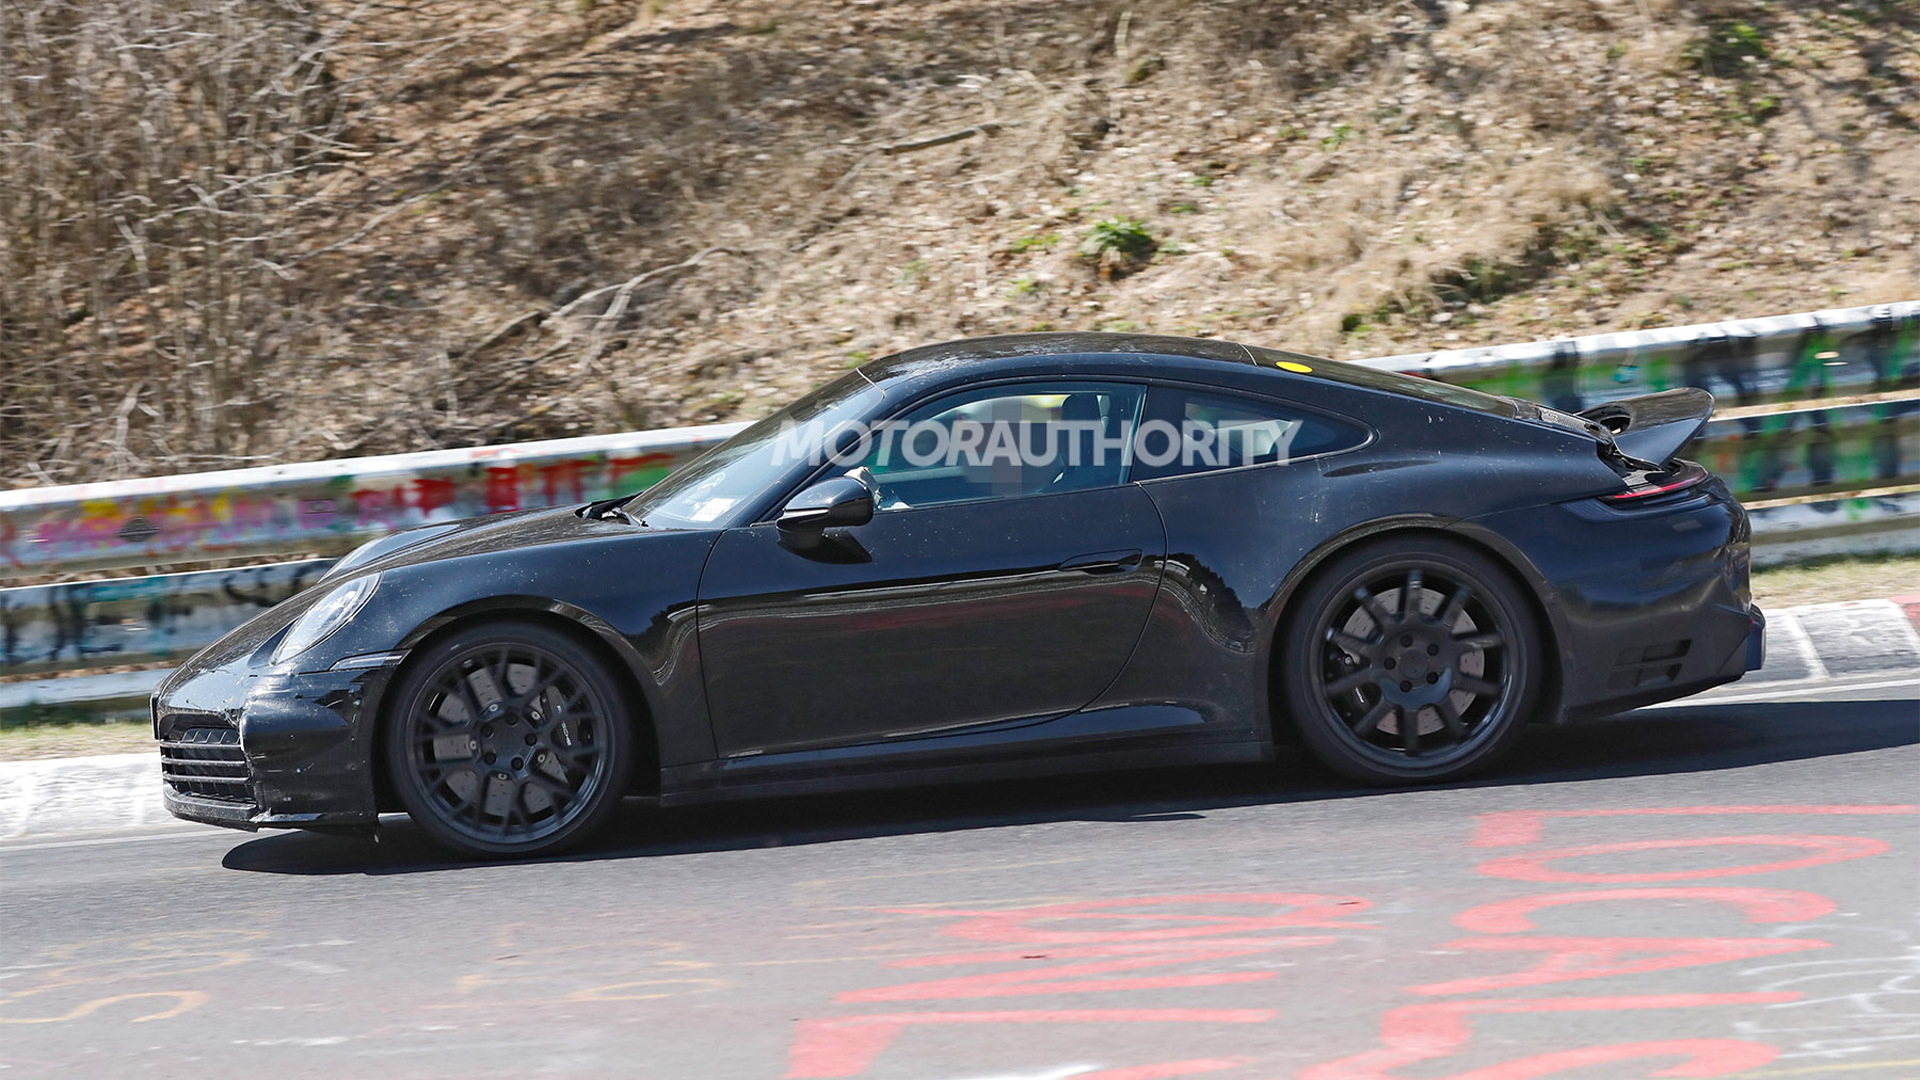 2024 Porsche 911 hybrid spy shots - Picture credit: S. Baldauf/SB-Medien